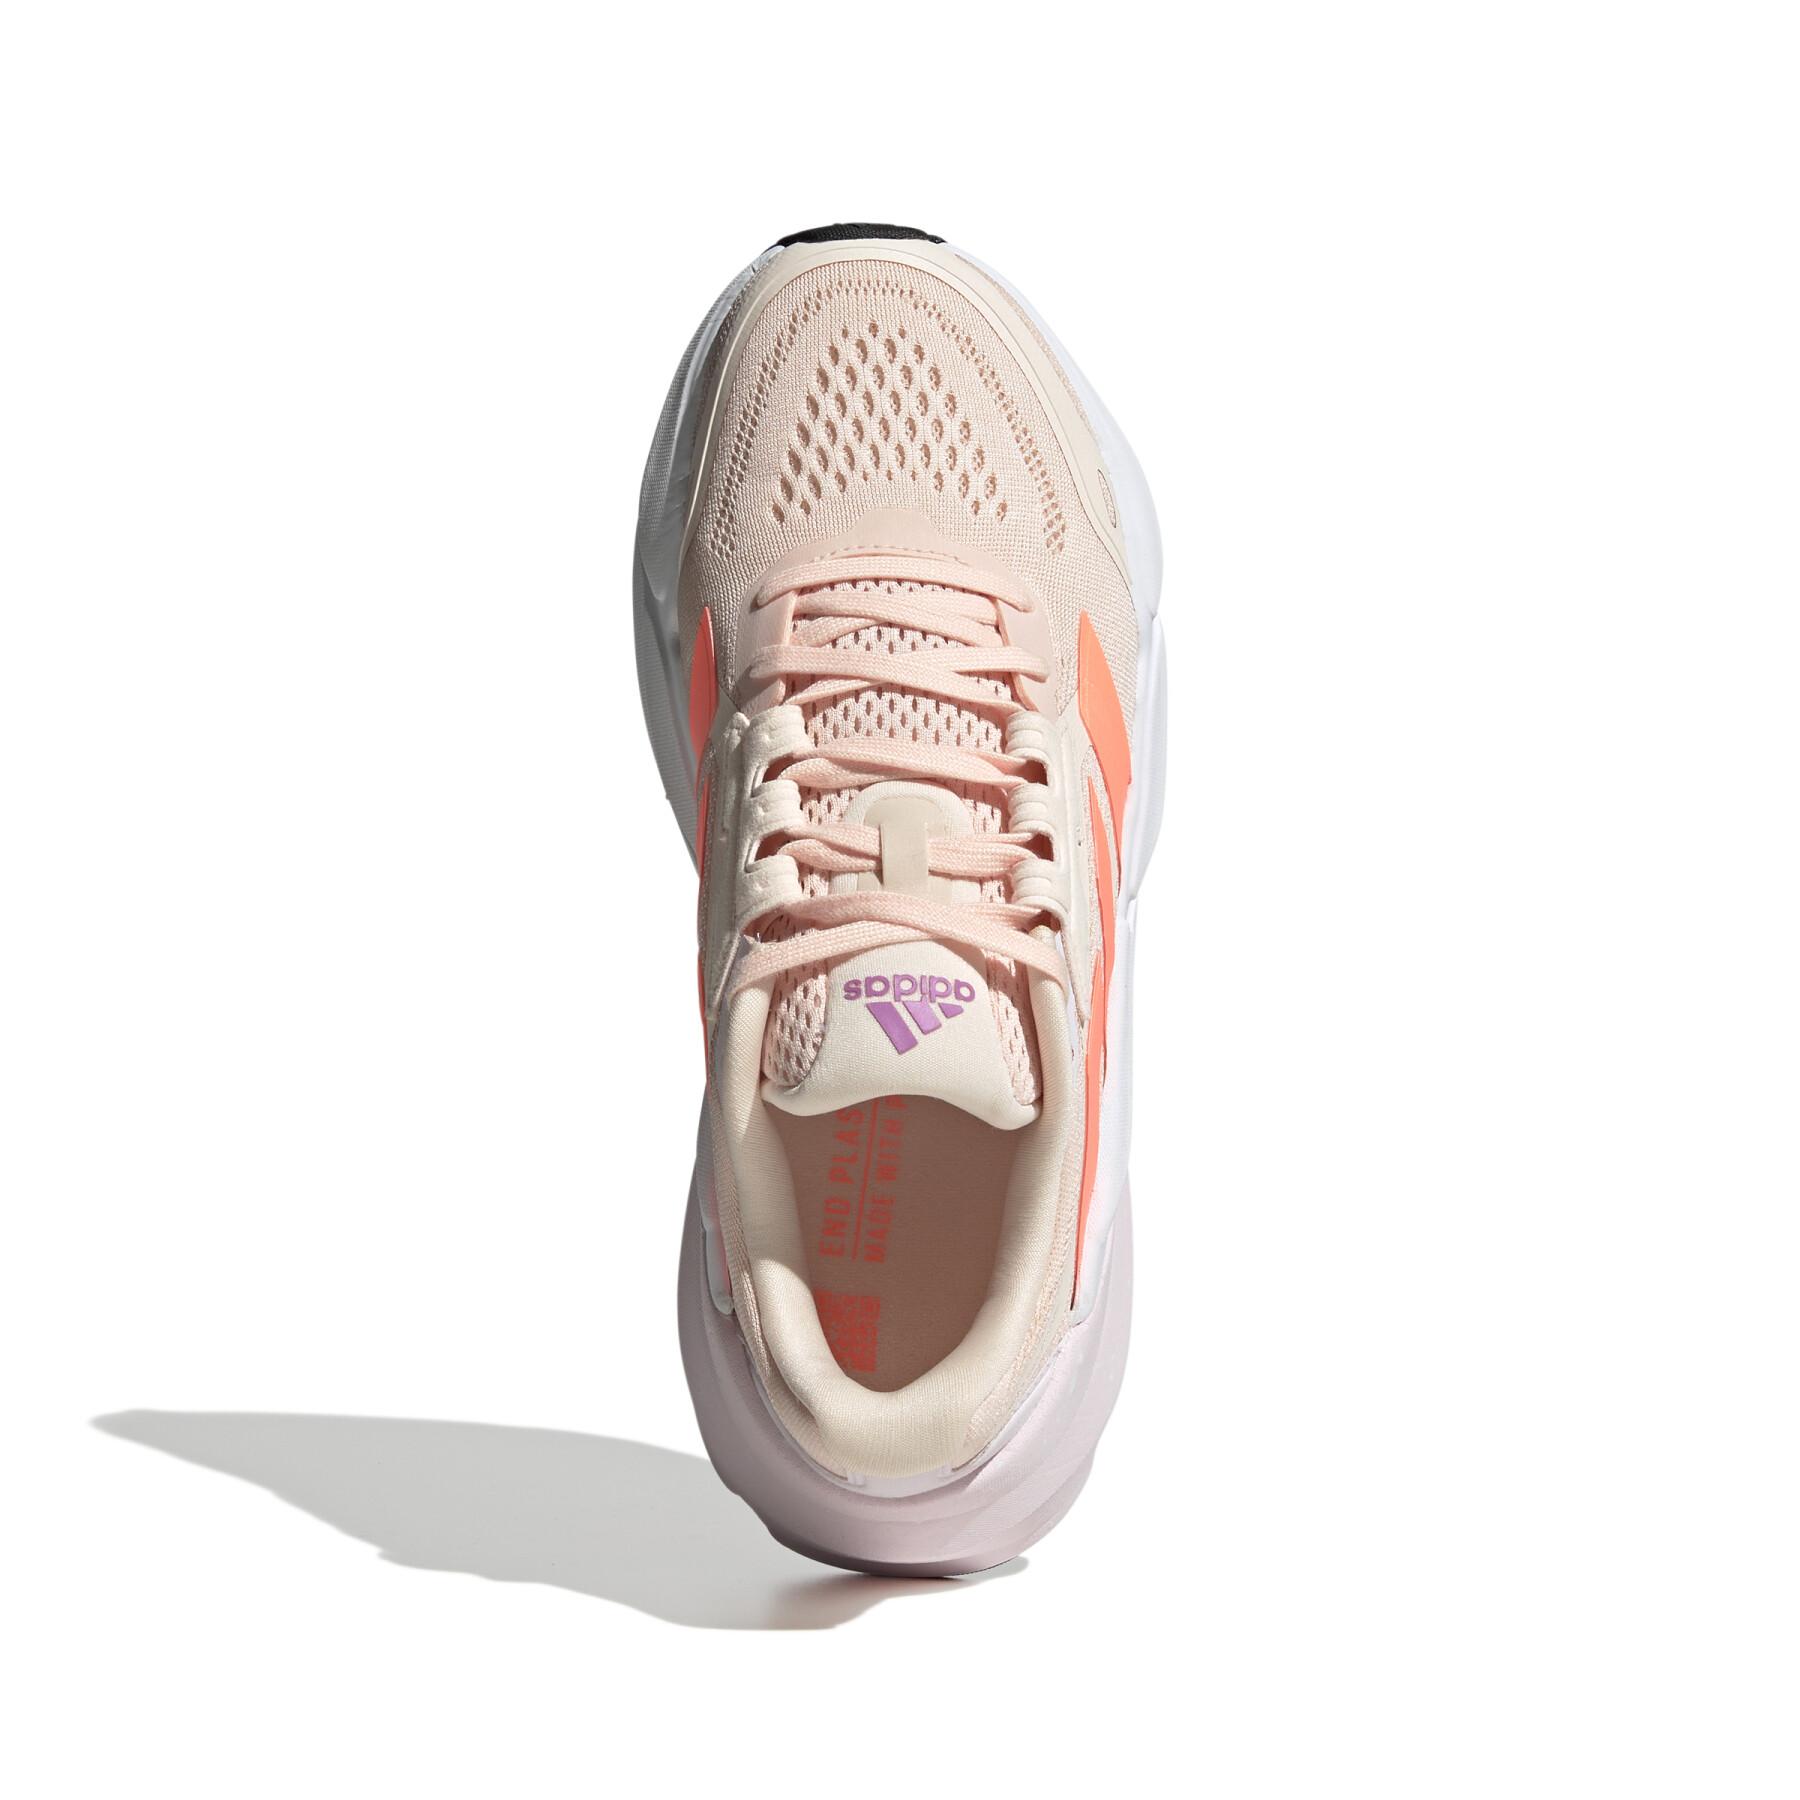 Scarpe running da donna Adidas Adistar